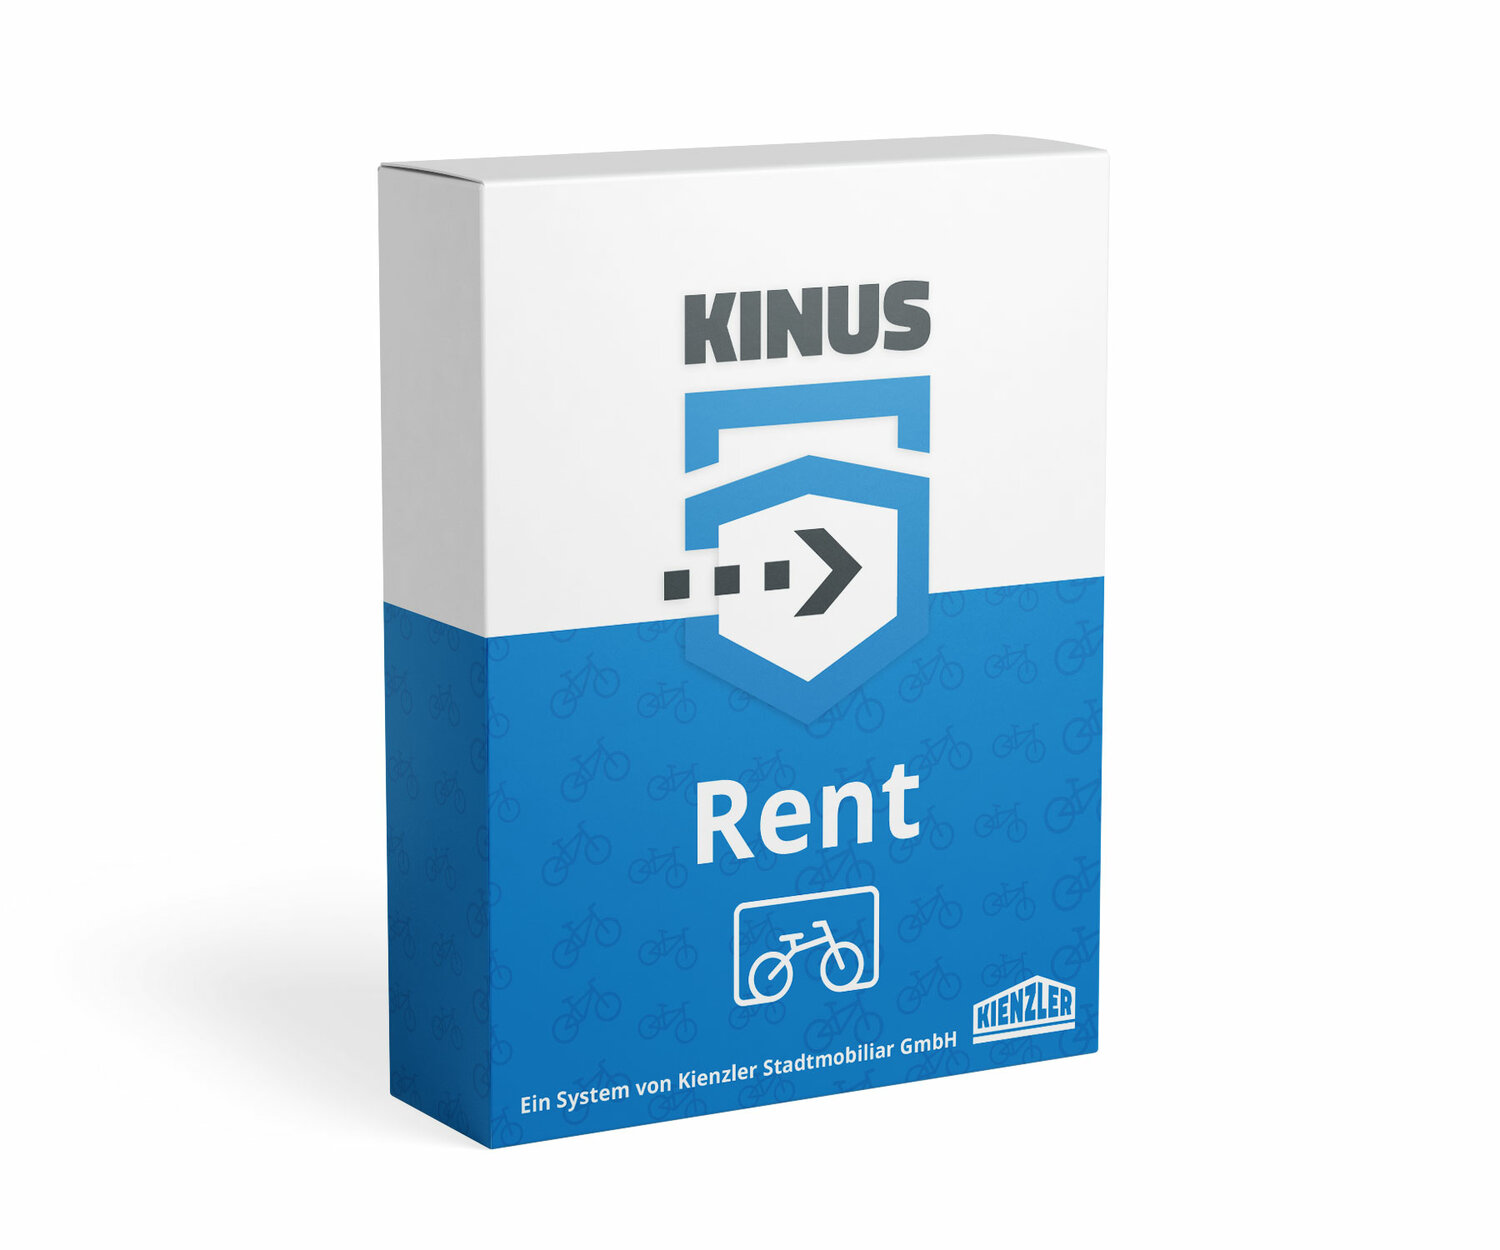 Grafische Darstellung des Zugangssystems Kinus Rent